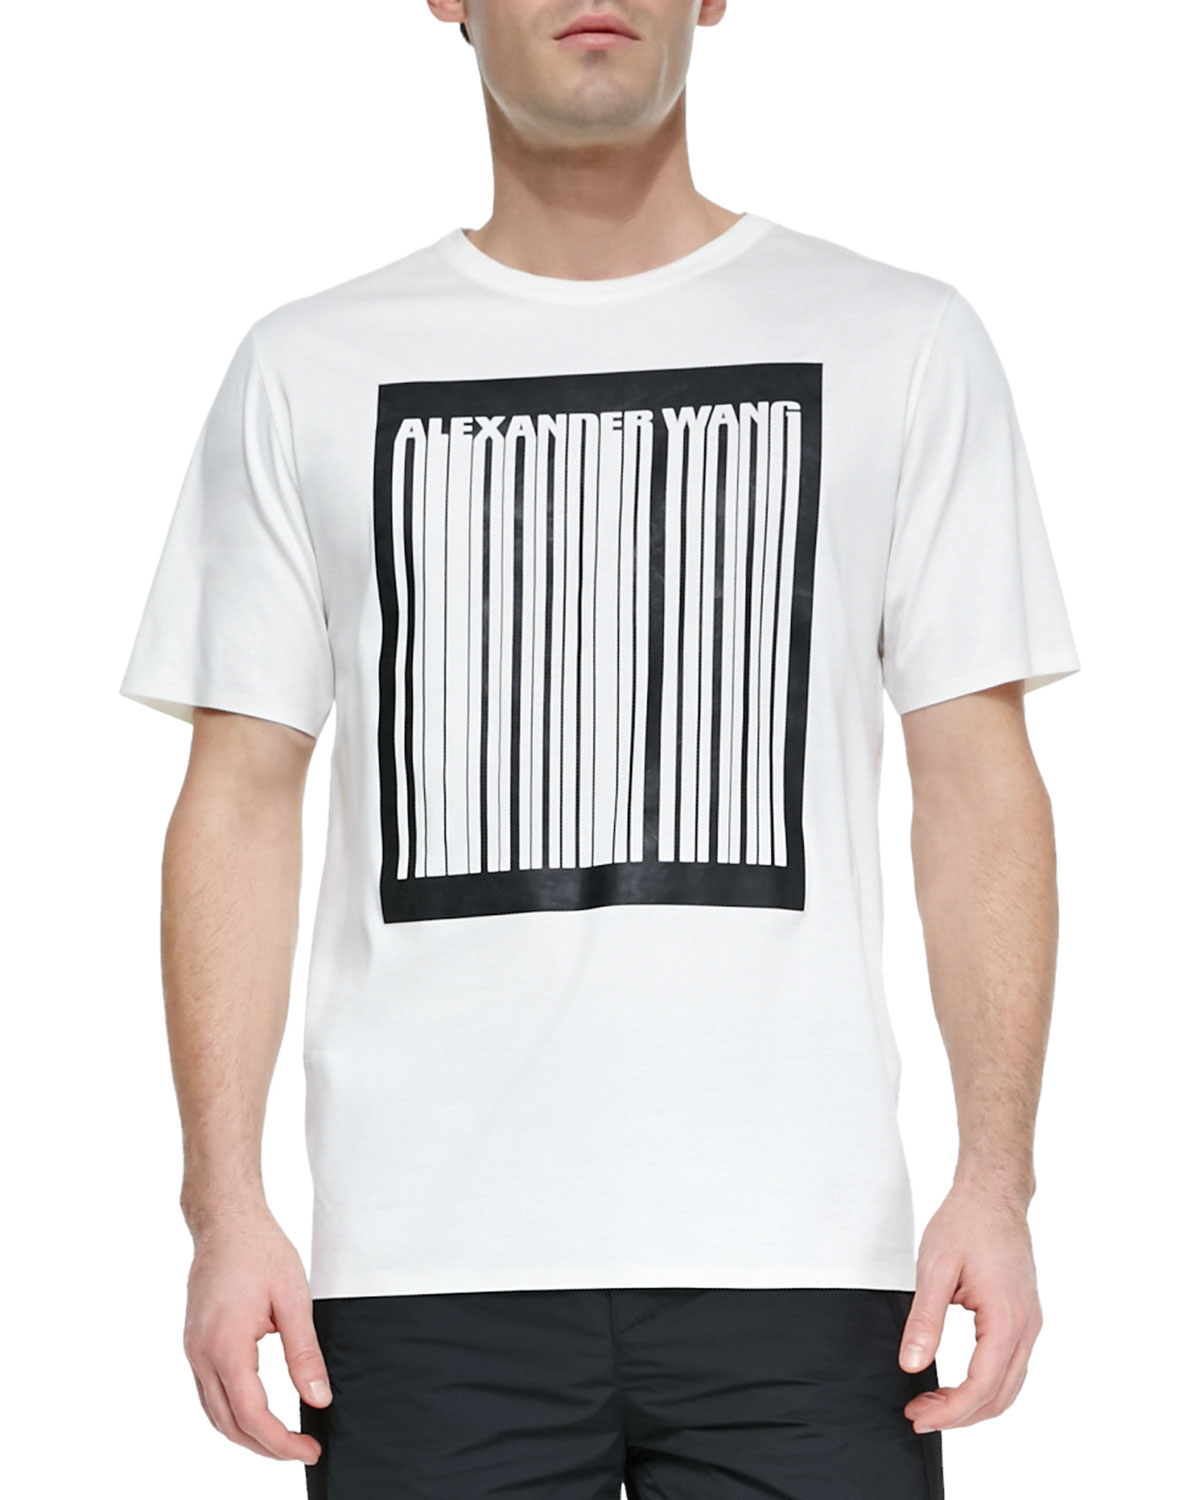 alexander barcode shirt